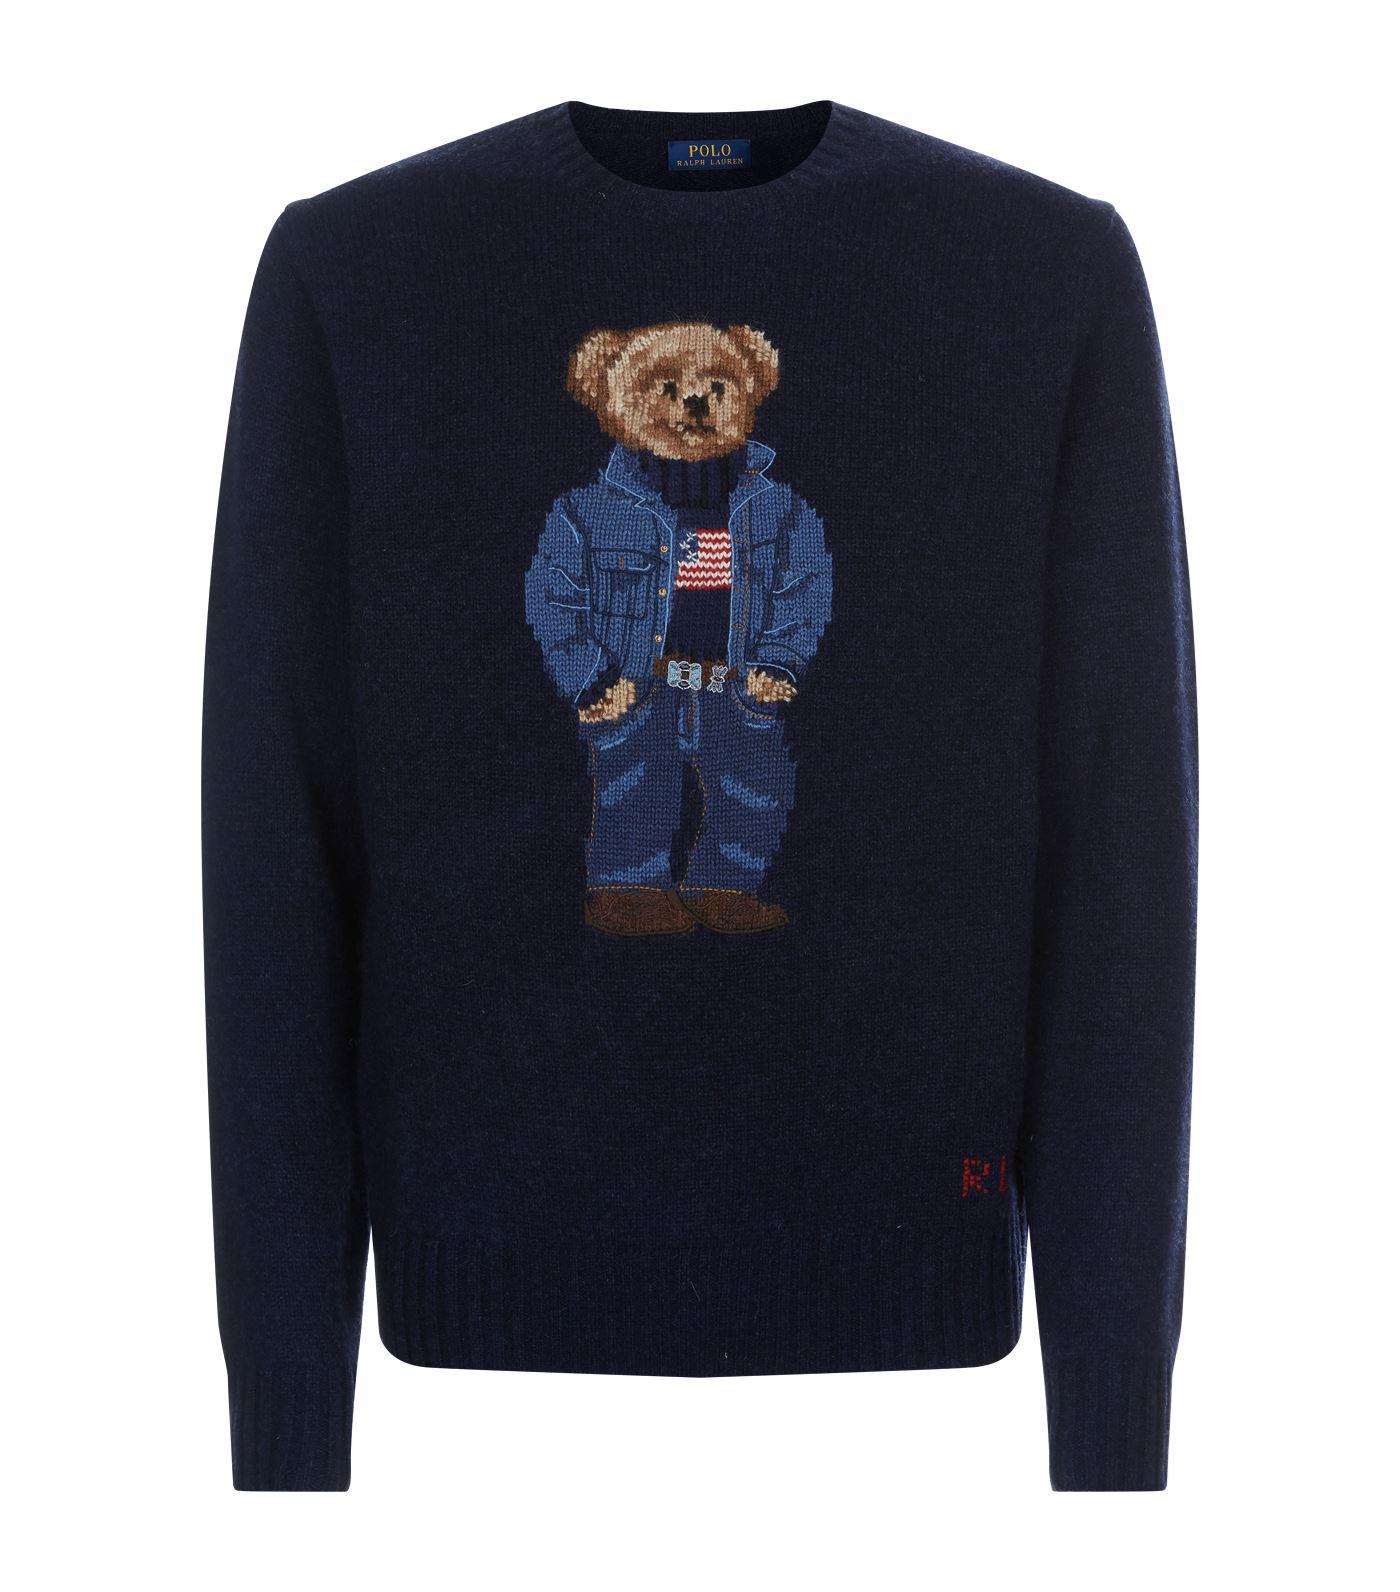 ralph lauren bear sweater sale